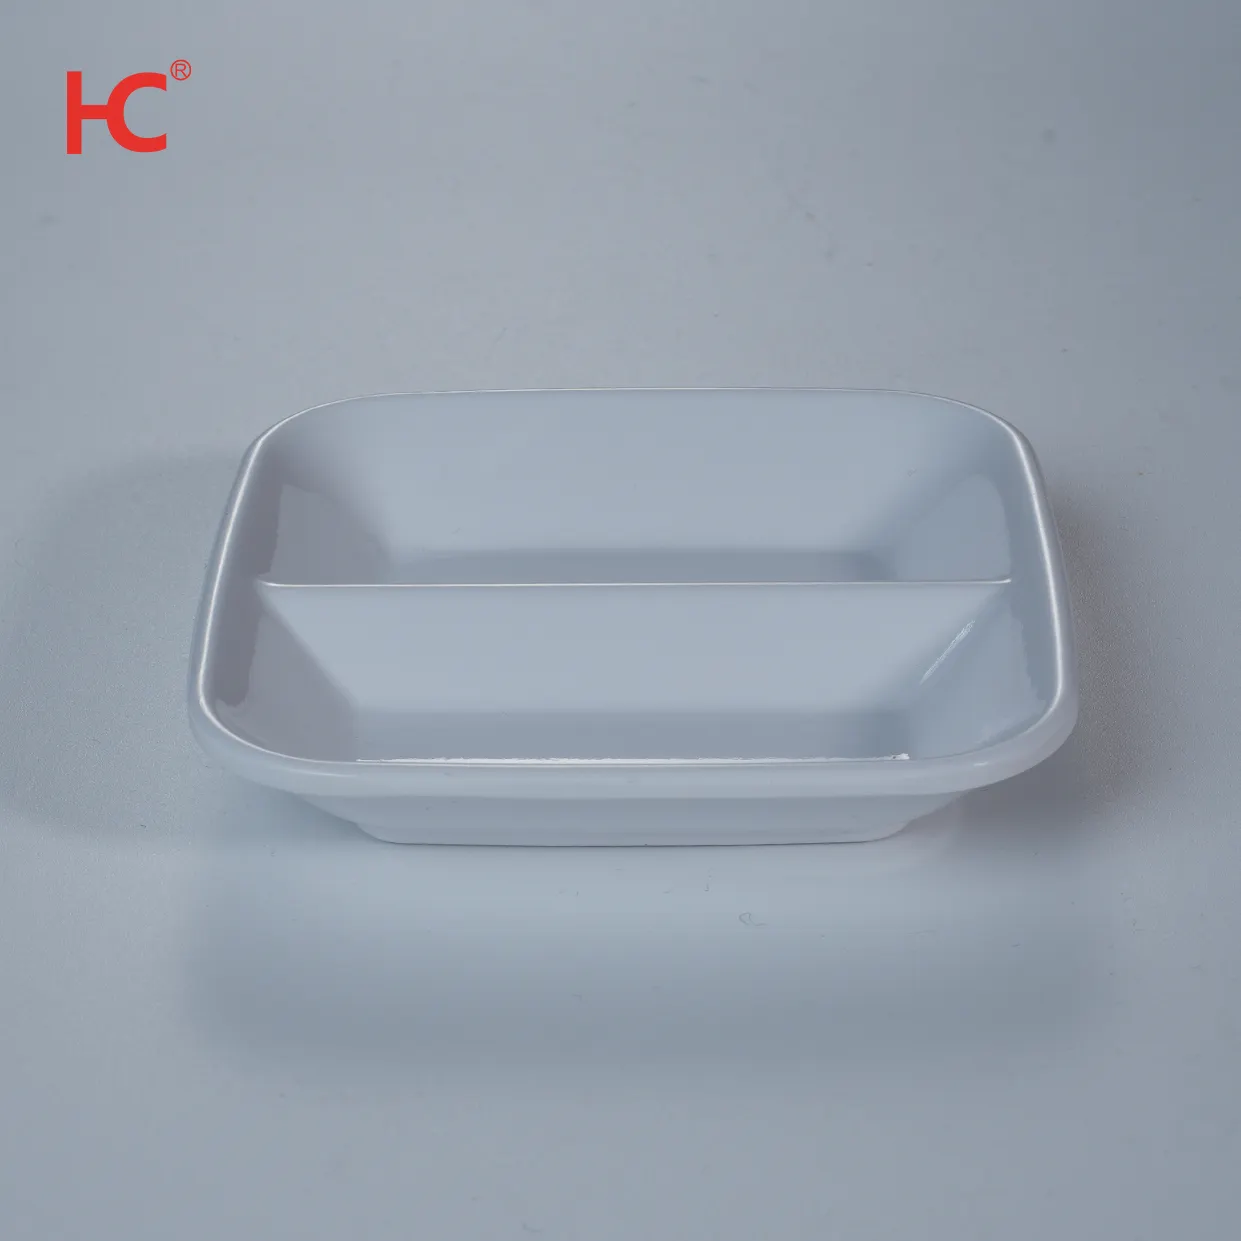 Vente en gros d'usine de plat à sauce blanc durable à 2 grilles moutarde ensemble de vaisselle en mélamine durable restaurant vaisselle en plastique pour